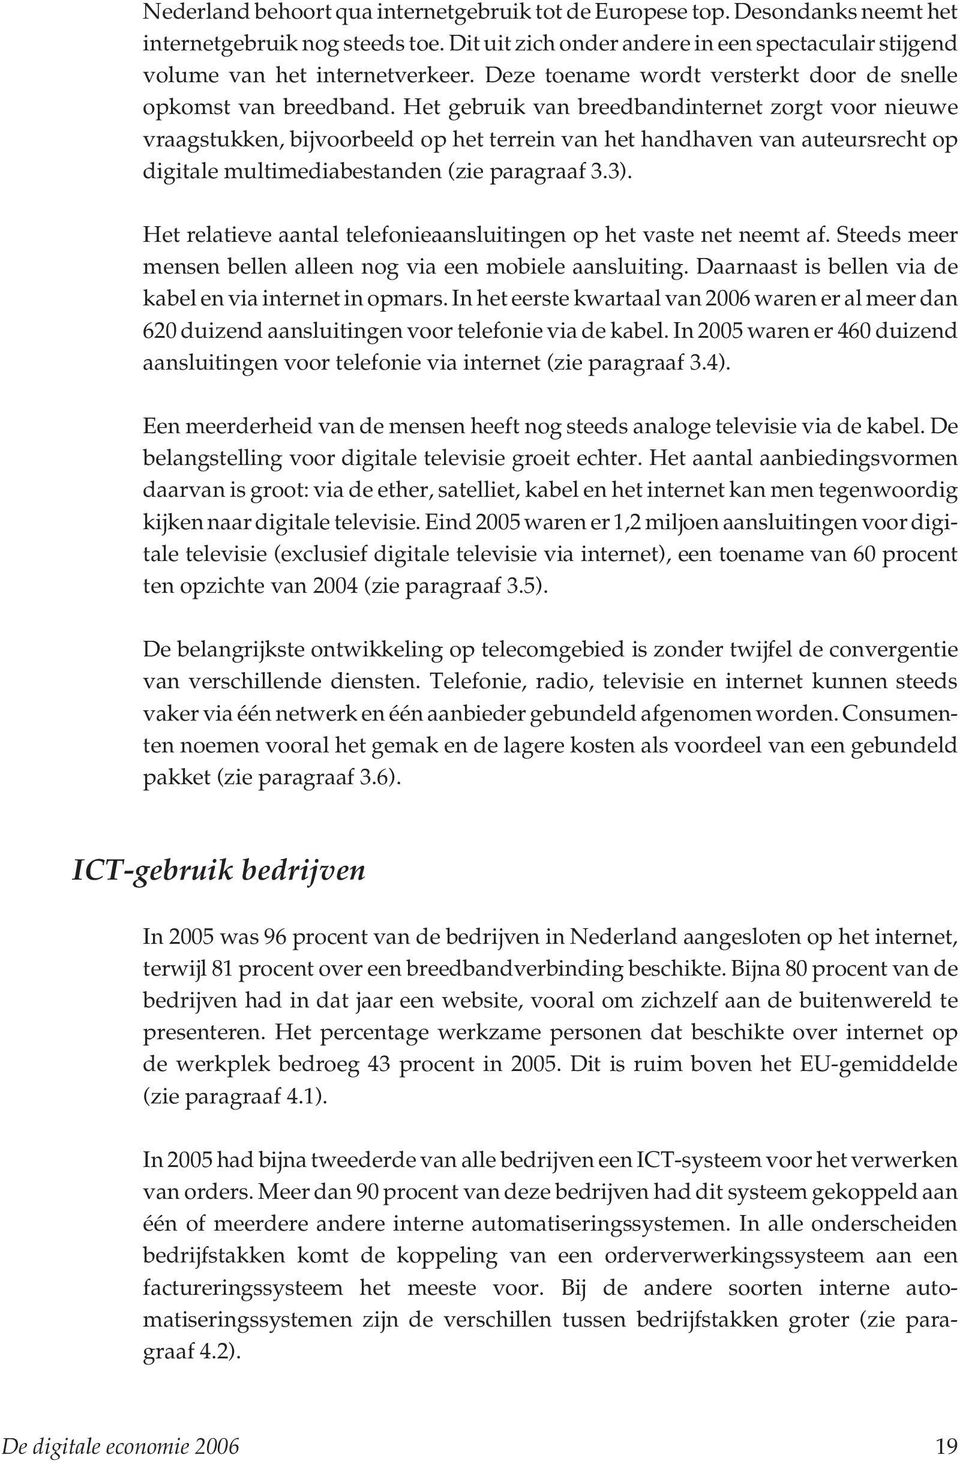 Het gebruik van breedbandinternet zorgt voor nieuwe vraagstukken, bijvoorbeeld op het terrein van het handhaven van auteursrecht op digitale multimediabestanden (zie paragraaf 3.3).